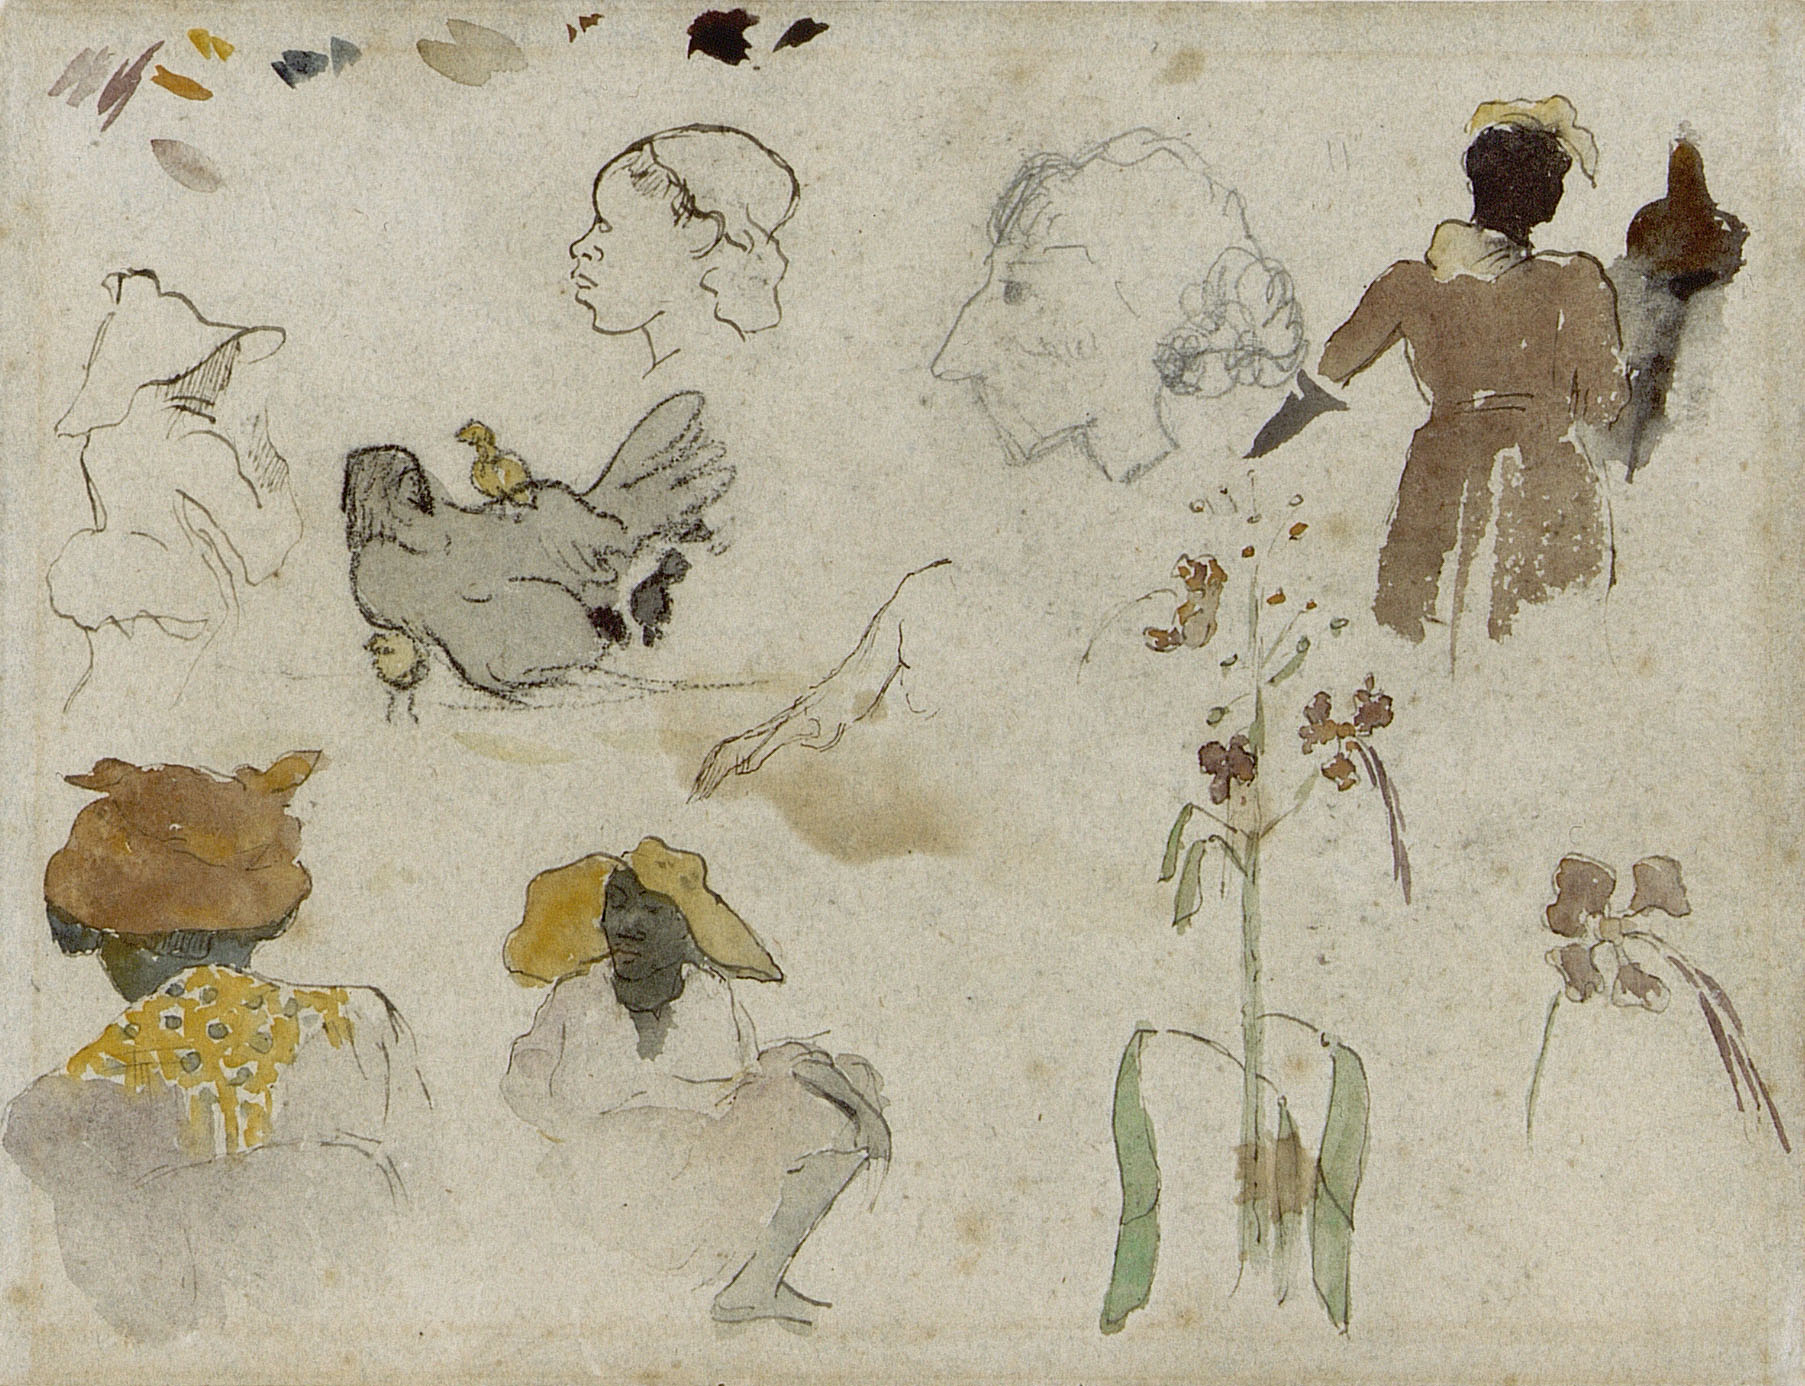 Schiță a mai multor figuri, flori și animale by Paul Gauguin - 1887 - 20.4 x 27 cm 